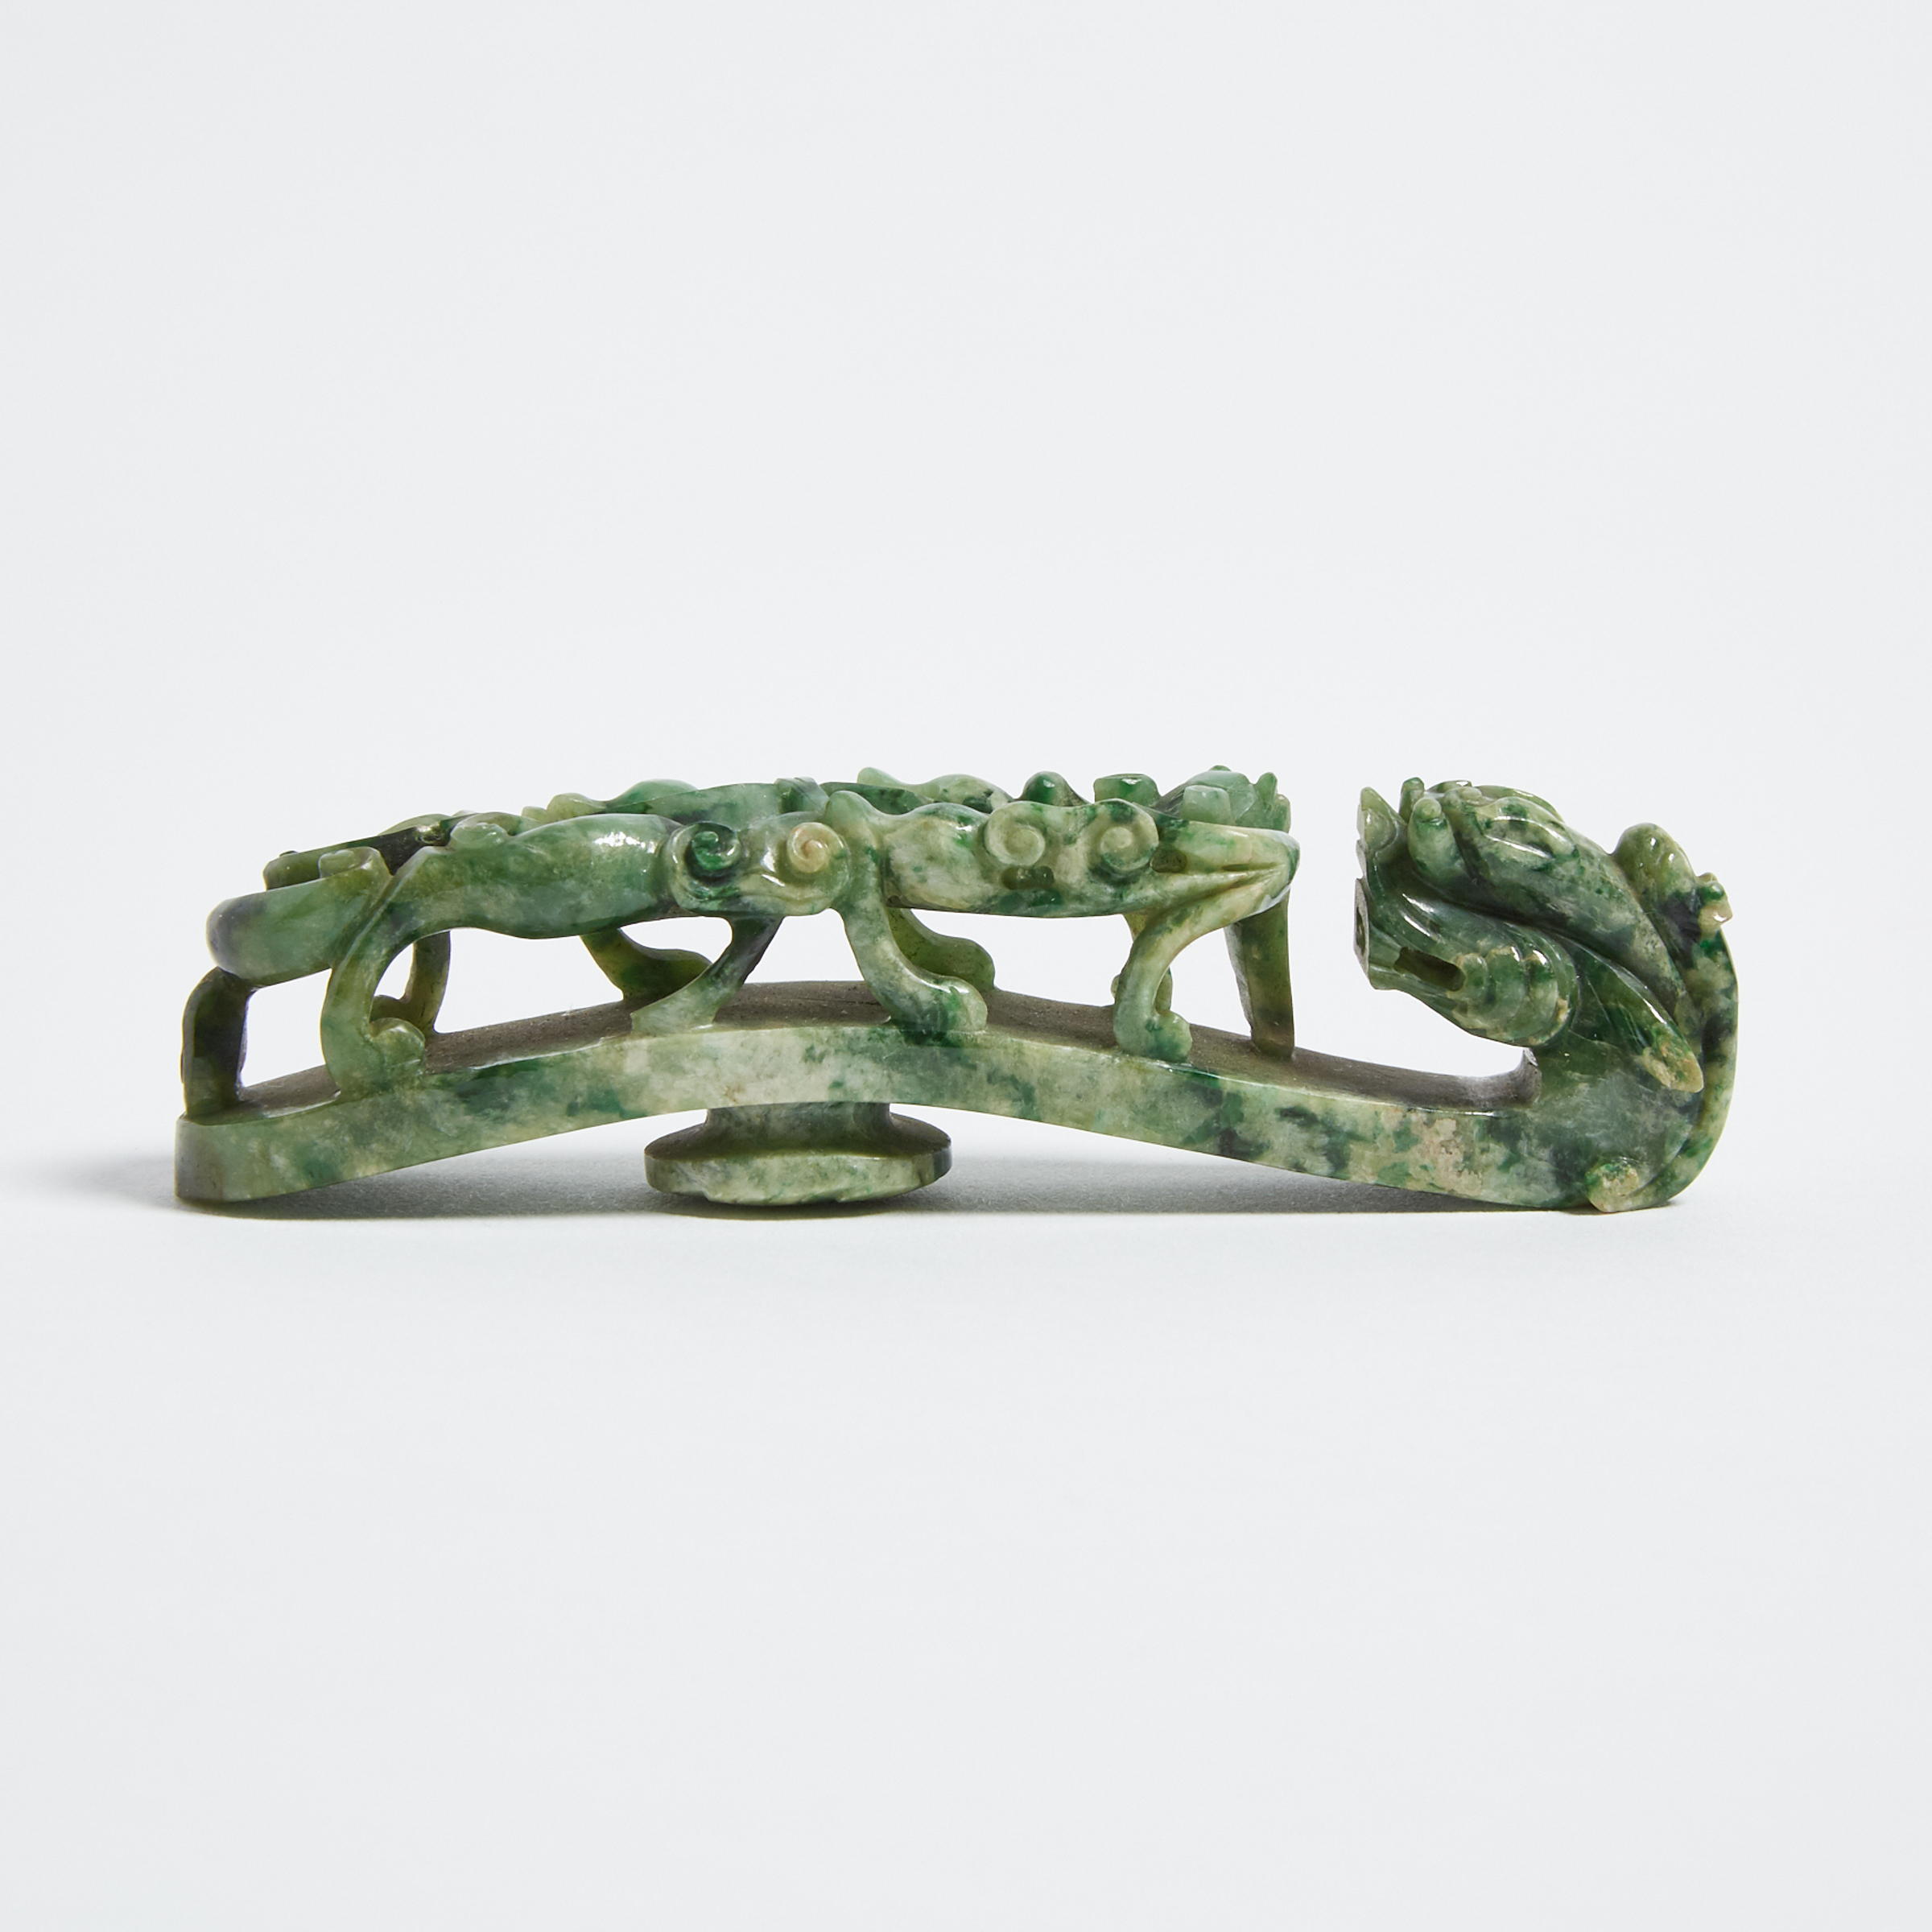 A Jadeite Carved Belt Buckle